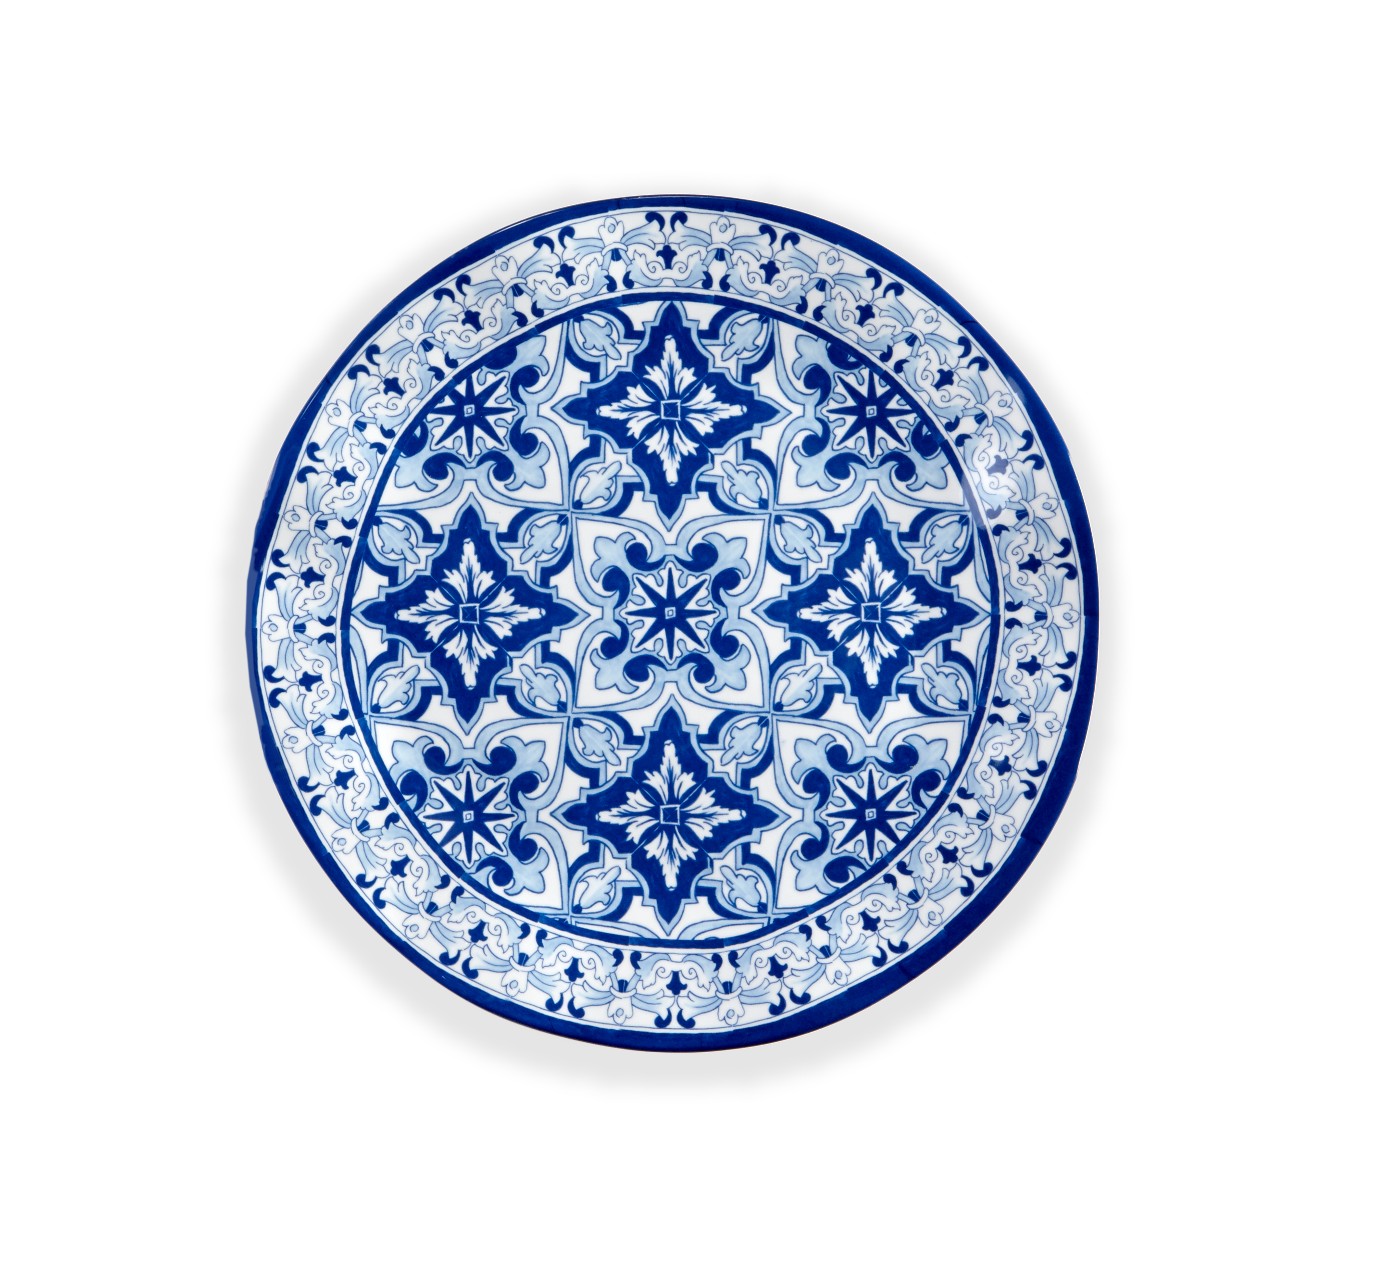 Q Squared TALAVERA Collection Blau Teller 27 cm 100% Melamin - 100-83805EU